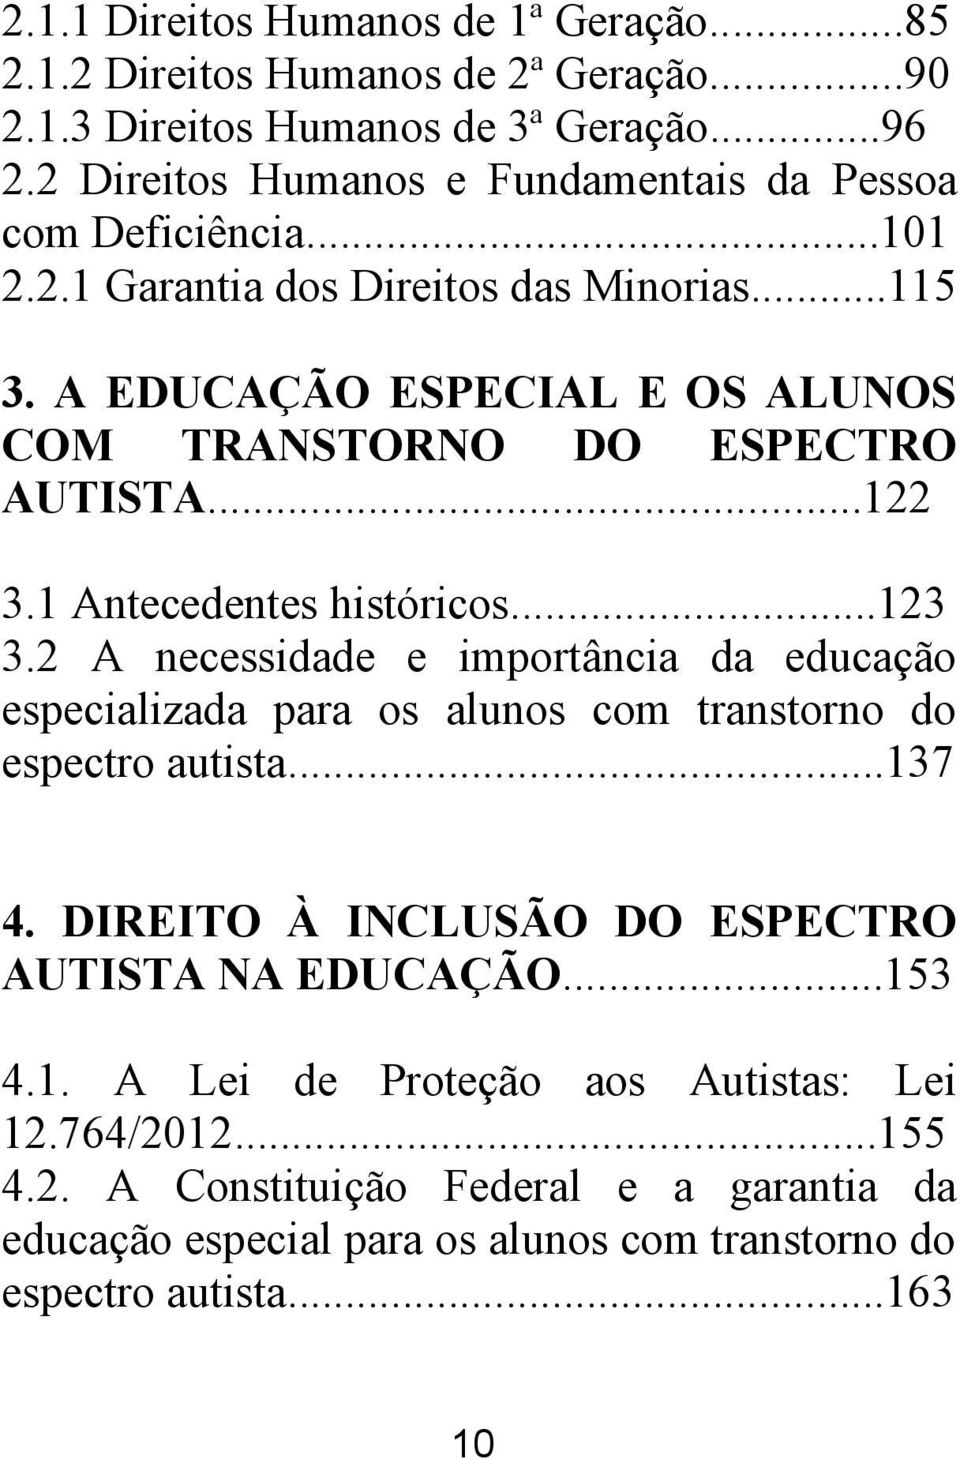 A EDUCAÇÃO ESPECIAL E OS ALUNOS COM TRANSTORNO DO ESPECTRO AUTISTA...122 3.1 Antecedentes históricos...123 3.